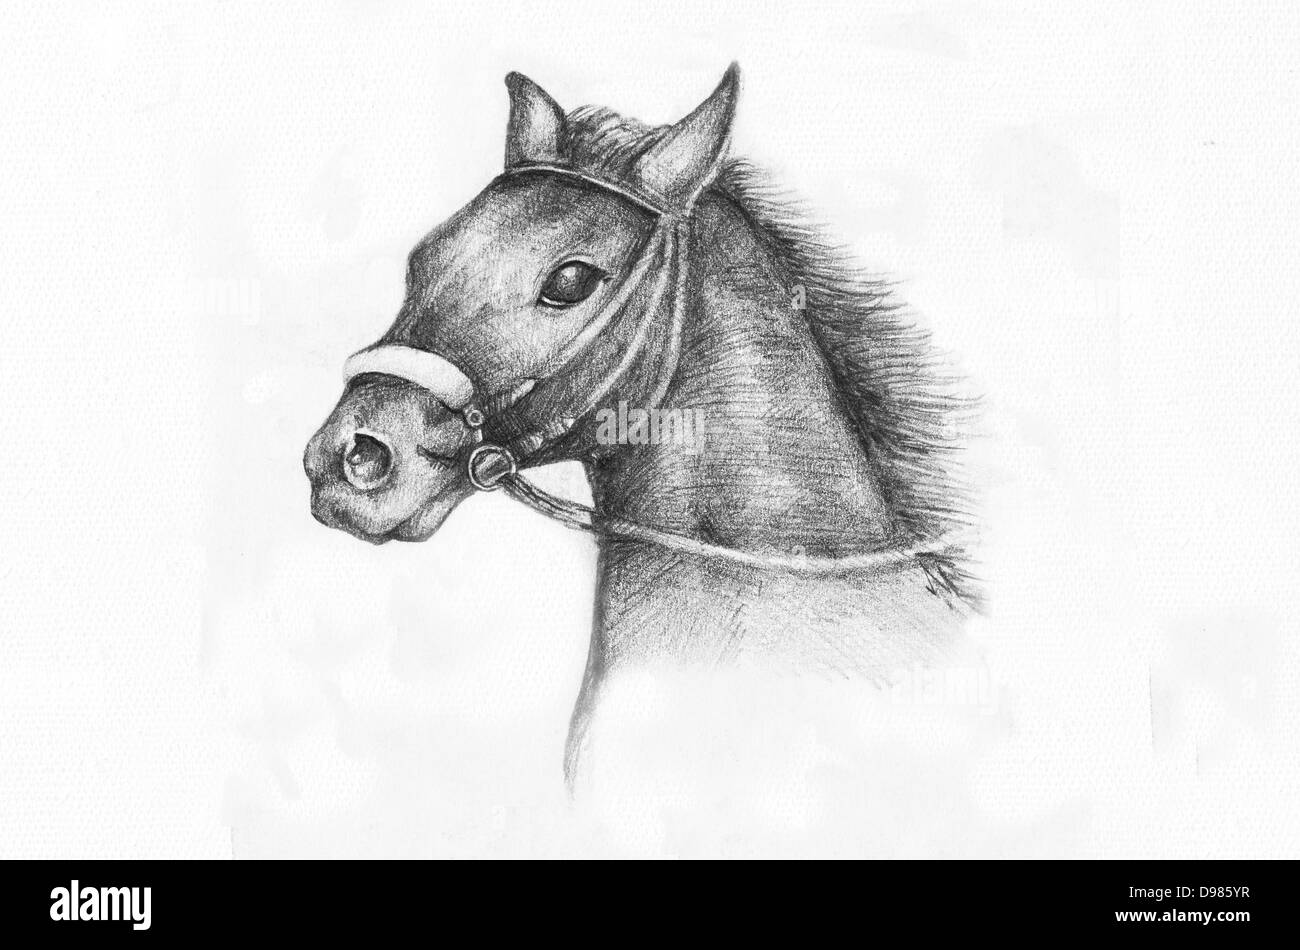 Detalle de un caballo etude, dibujo a lápiz sobre papel blanco, artista de 15 años de edad. Foto de stock